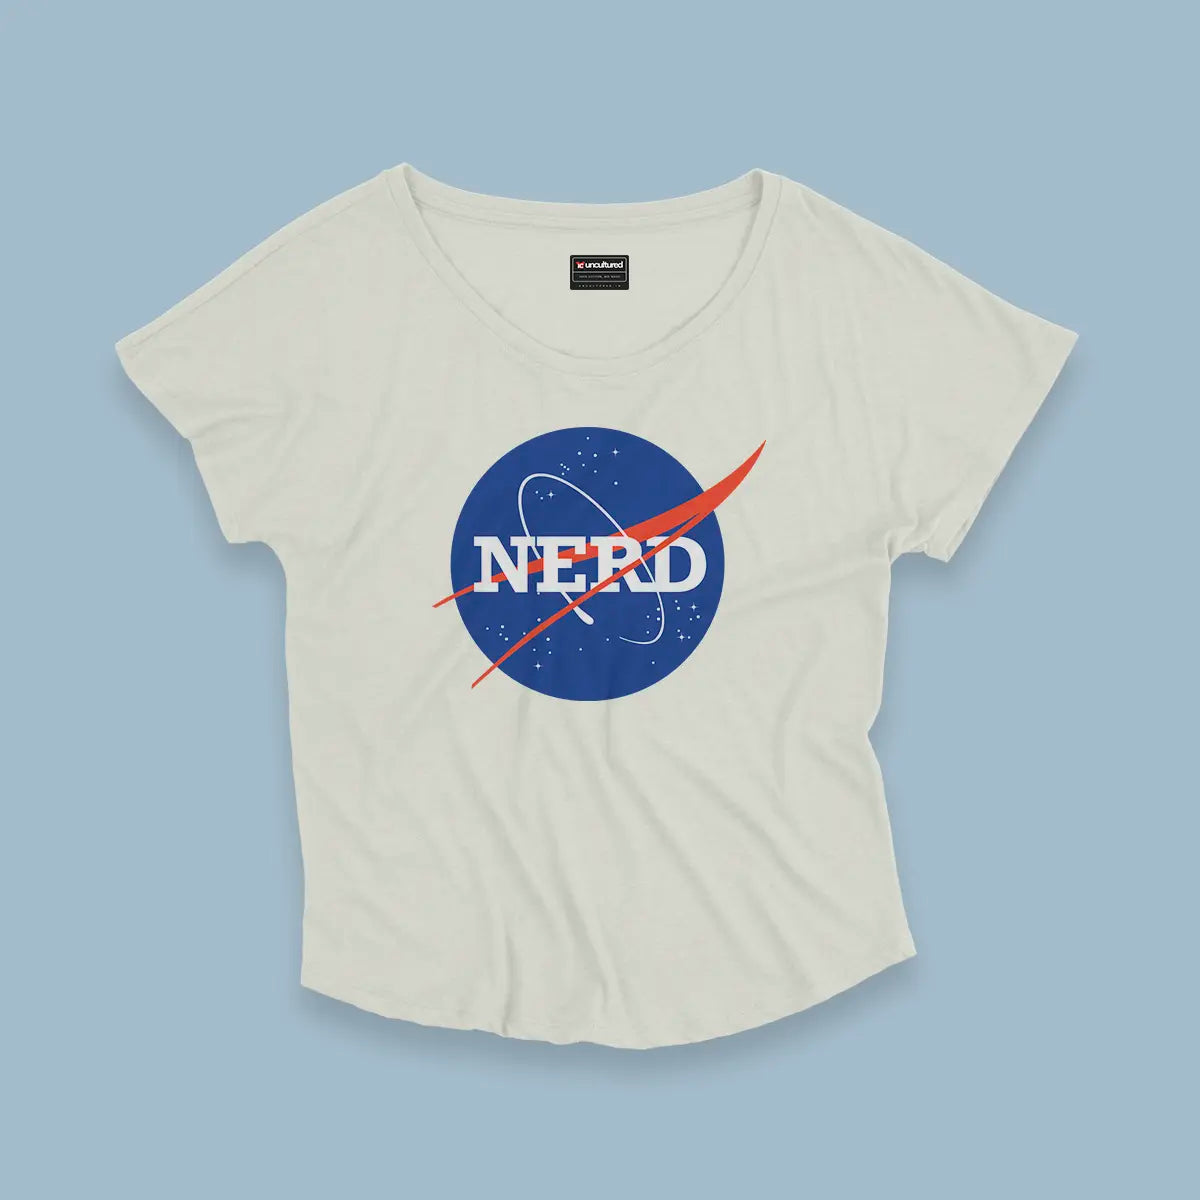 Nerd - Croptop